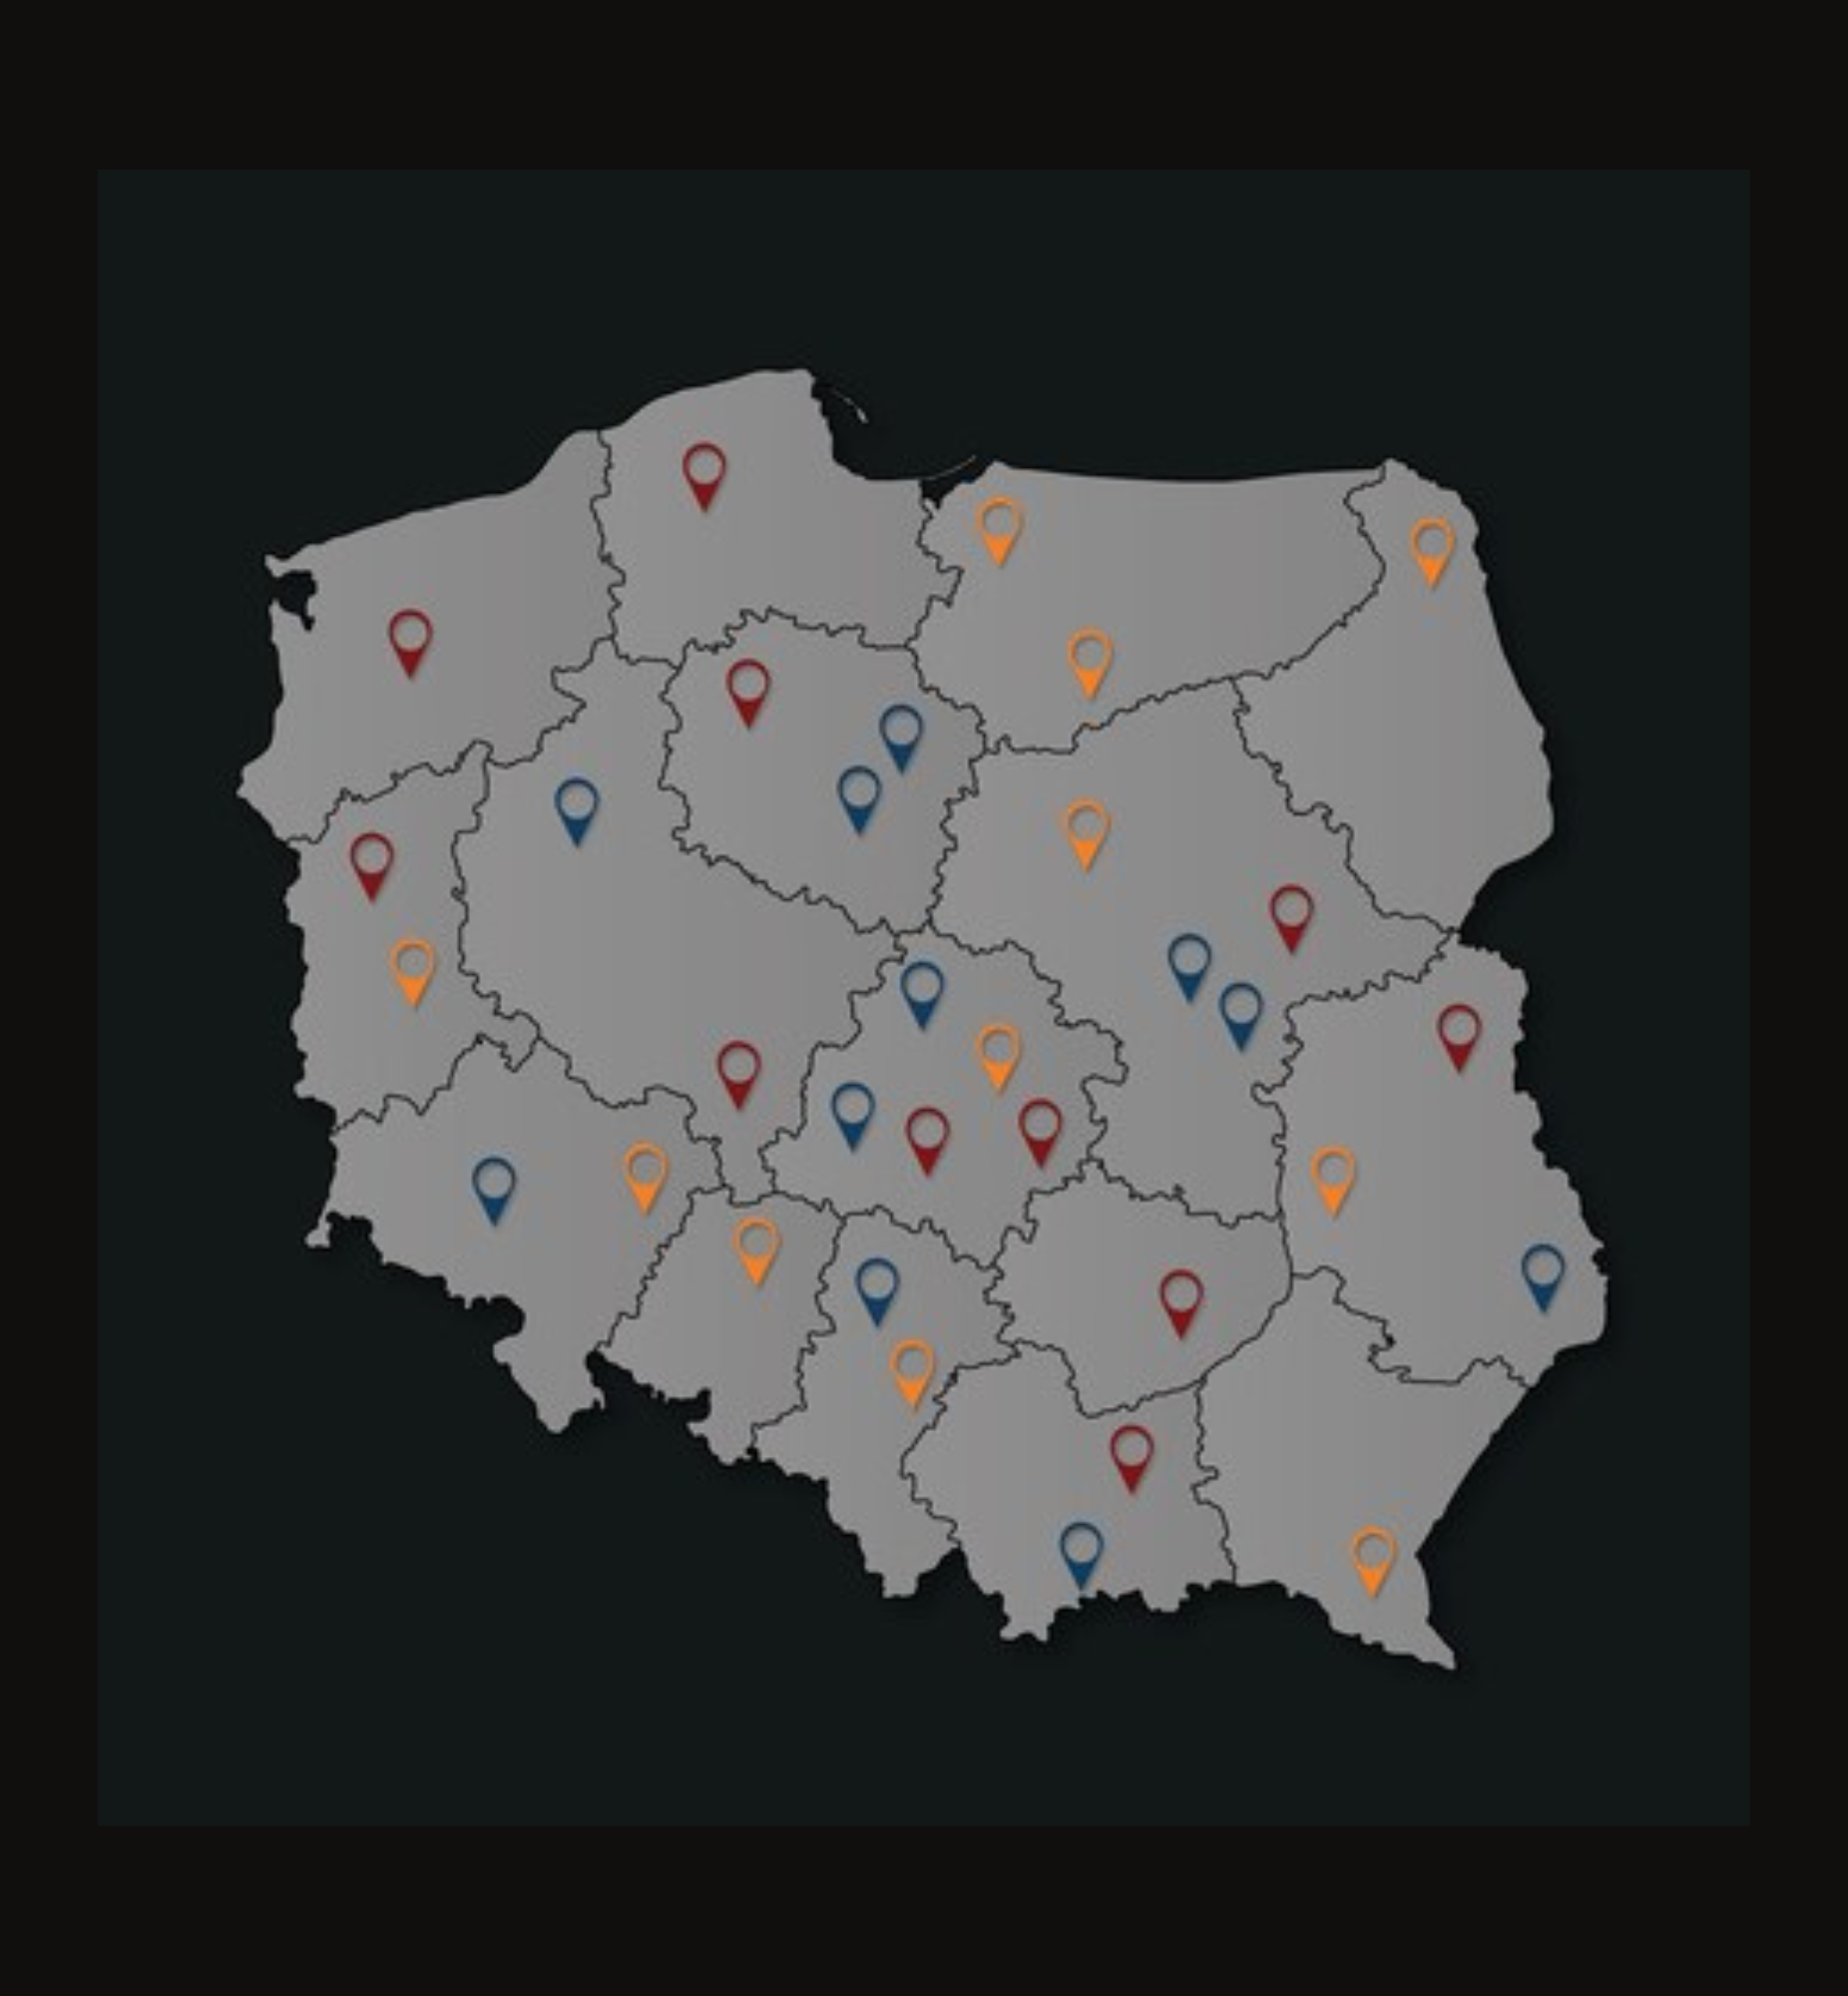 Na grafice zarys mapy Polski ze znacznikami w różnych miejscach.